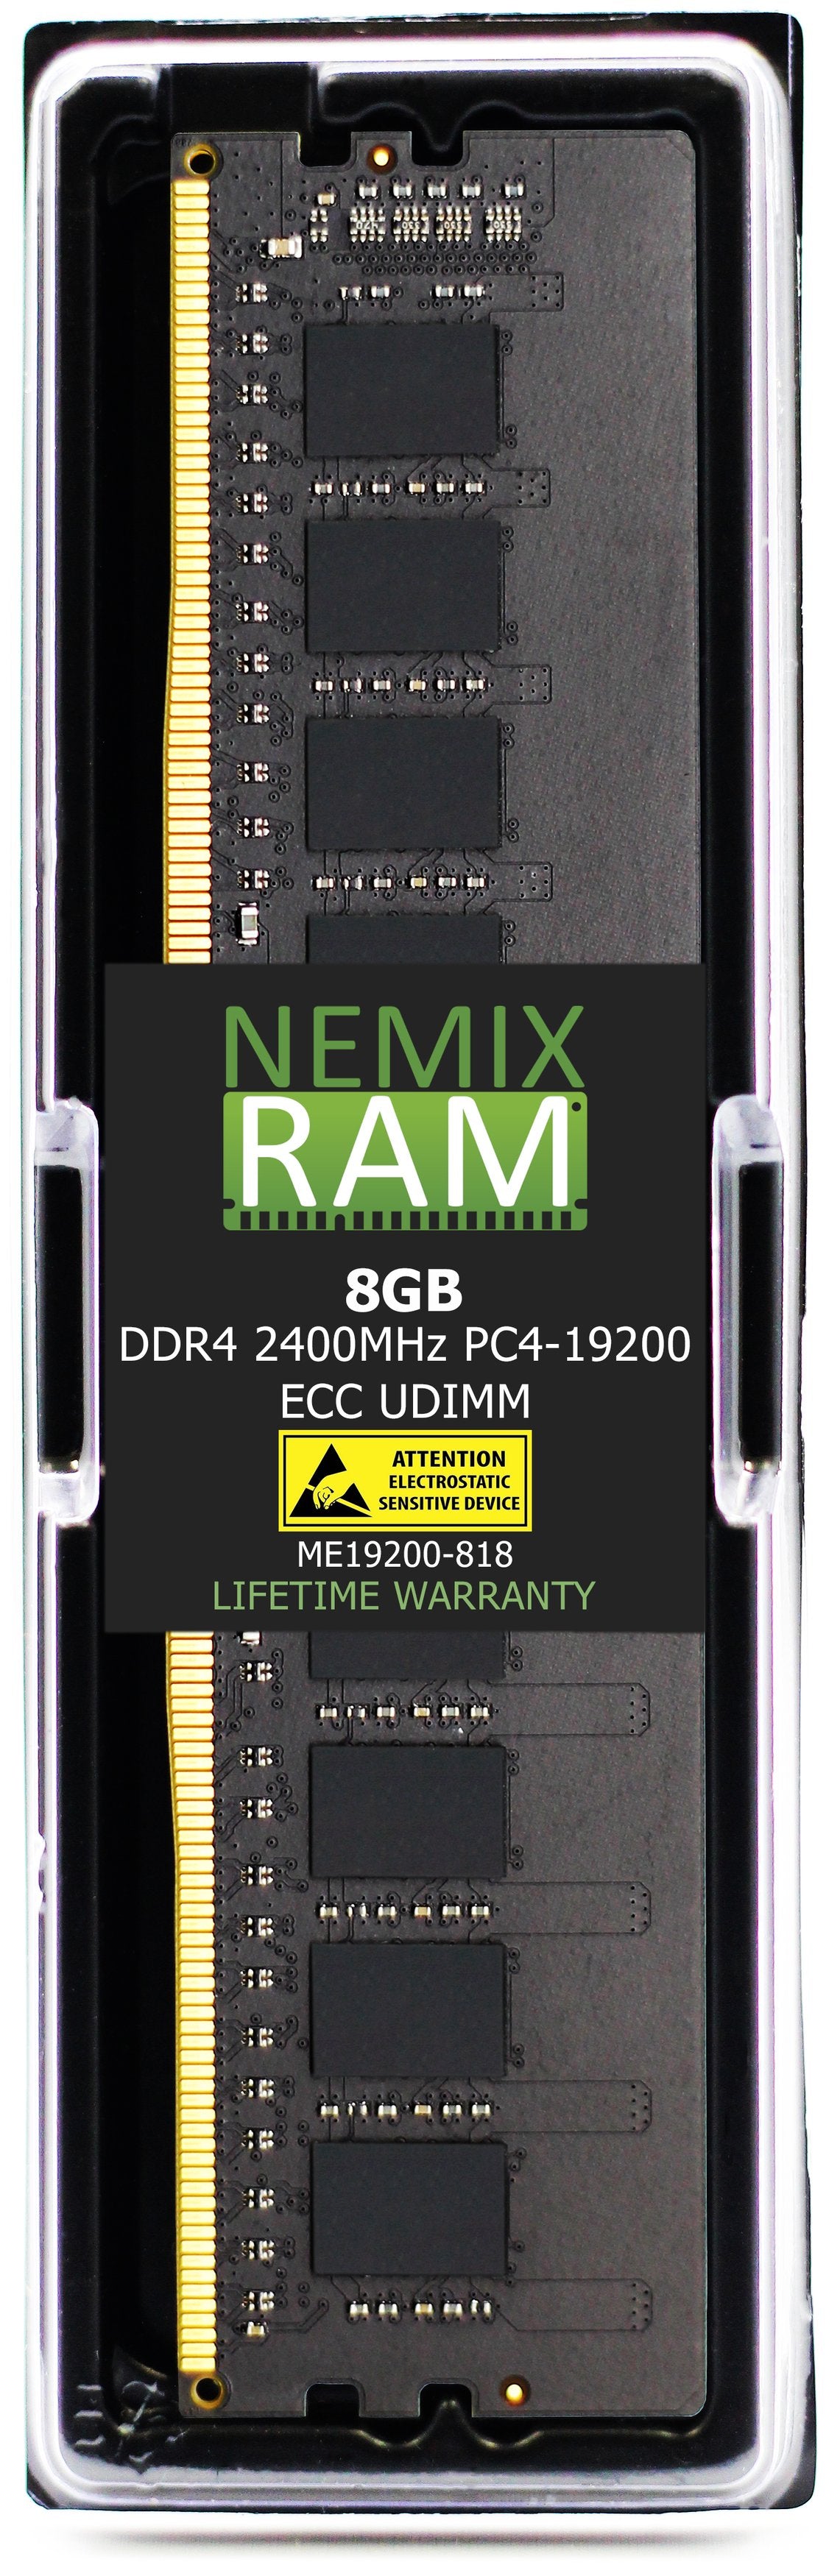 8GB DDR4 2400MHZ PC4-19200 ECC UDIMM Compatible with Supermicro MEM-DR480L-CL02-EU24